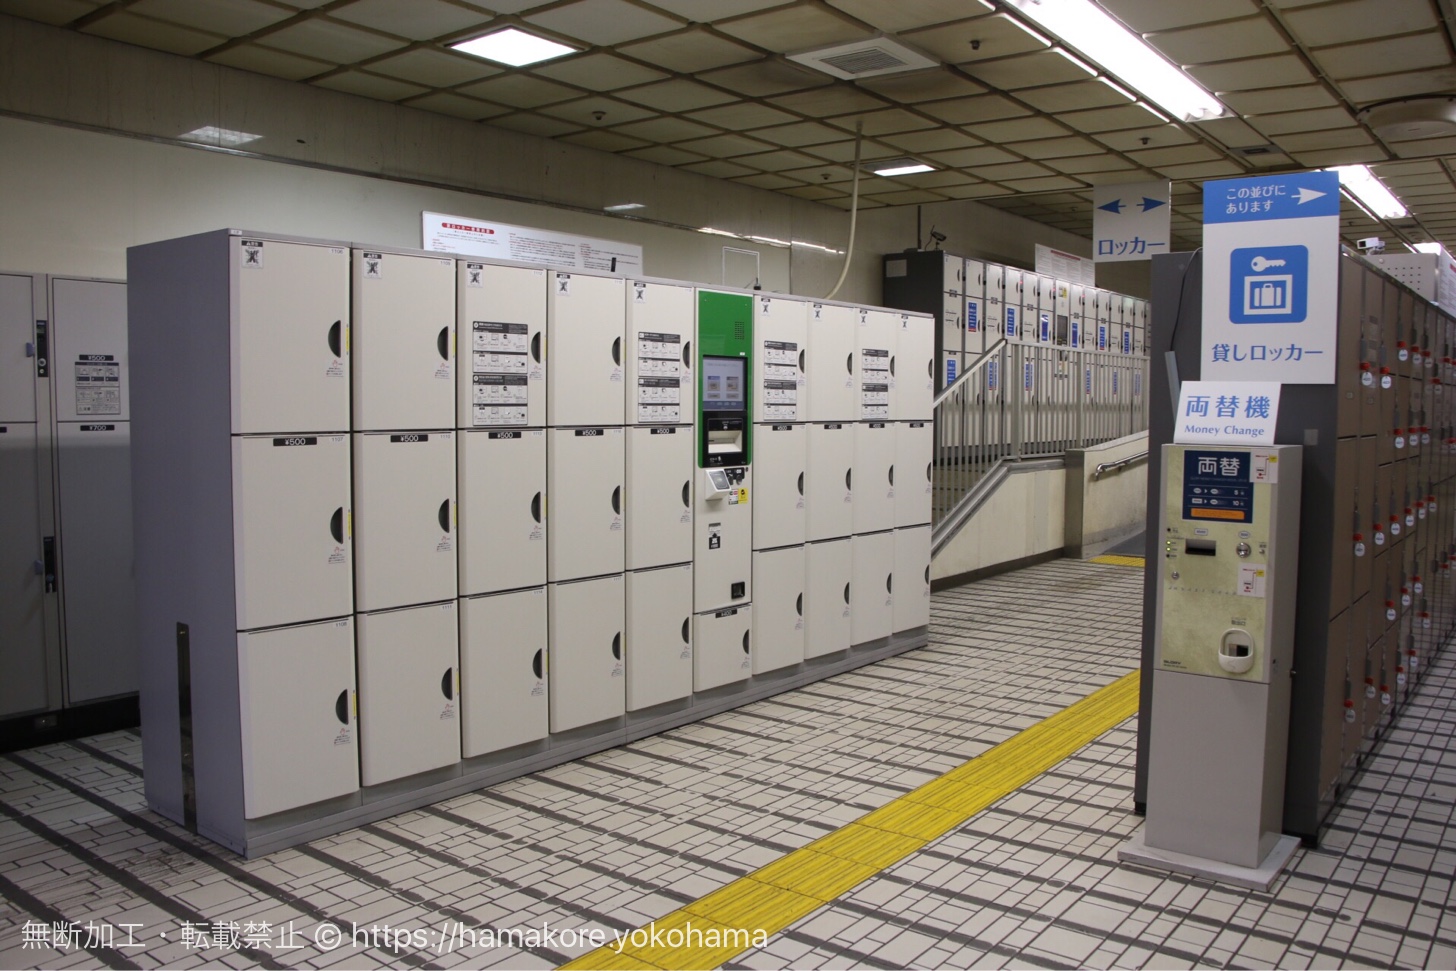 横浜駅最大のコインロッカー設置場所